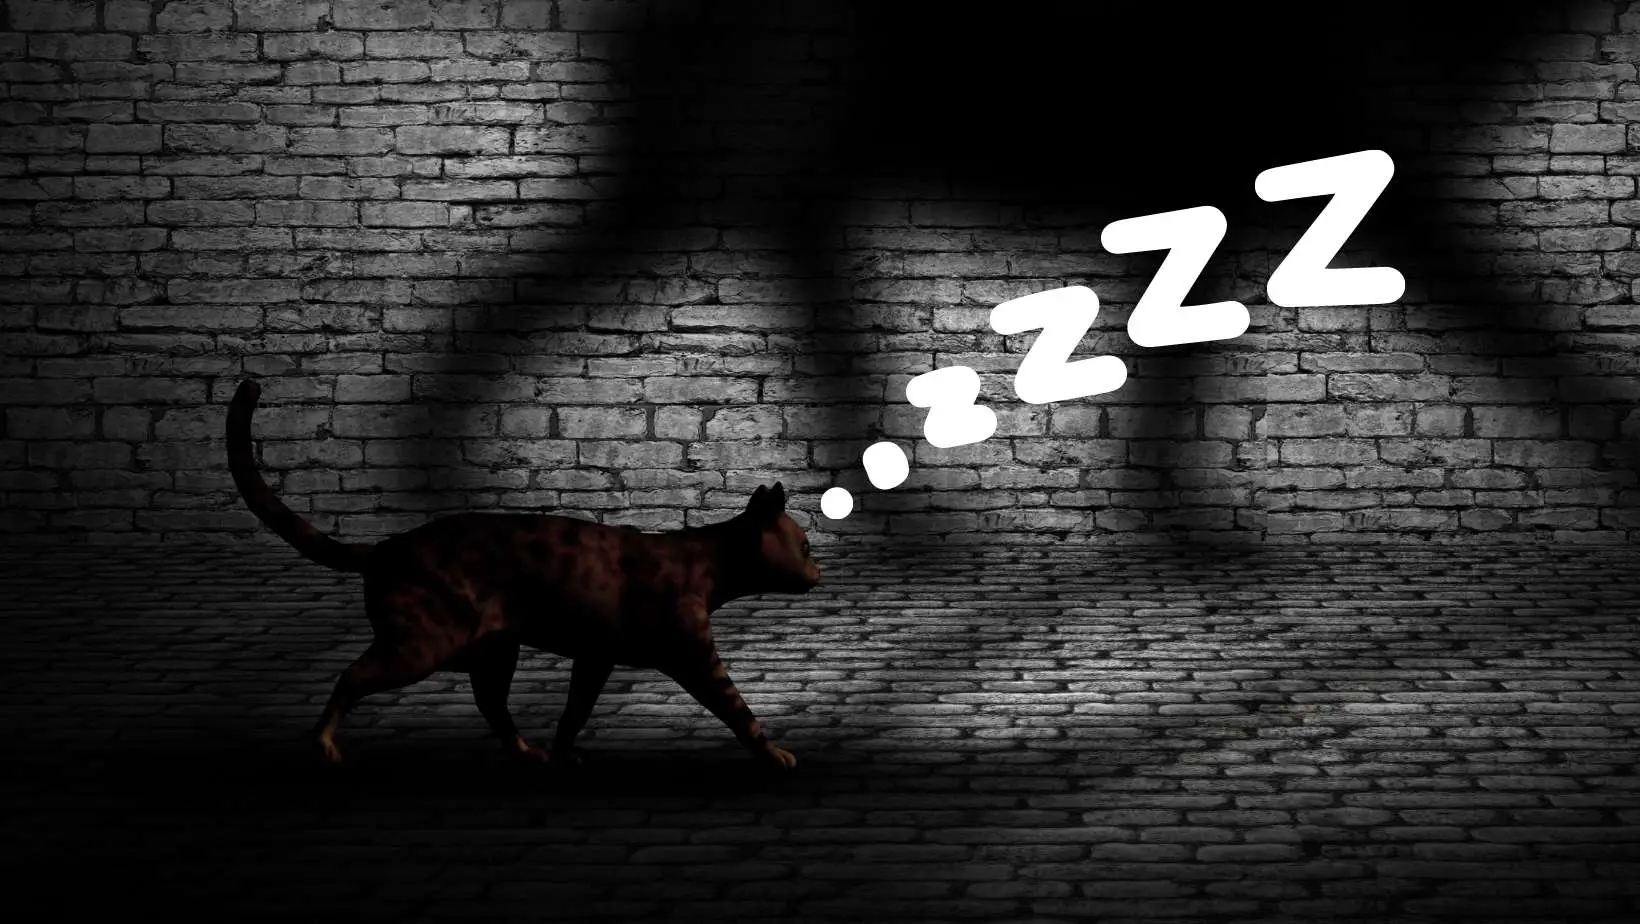 Can Cats Sleepwalk?